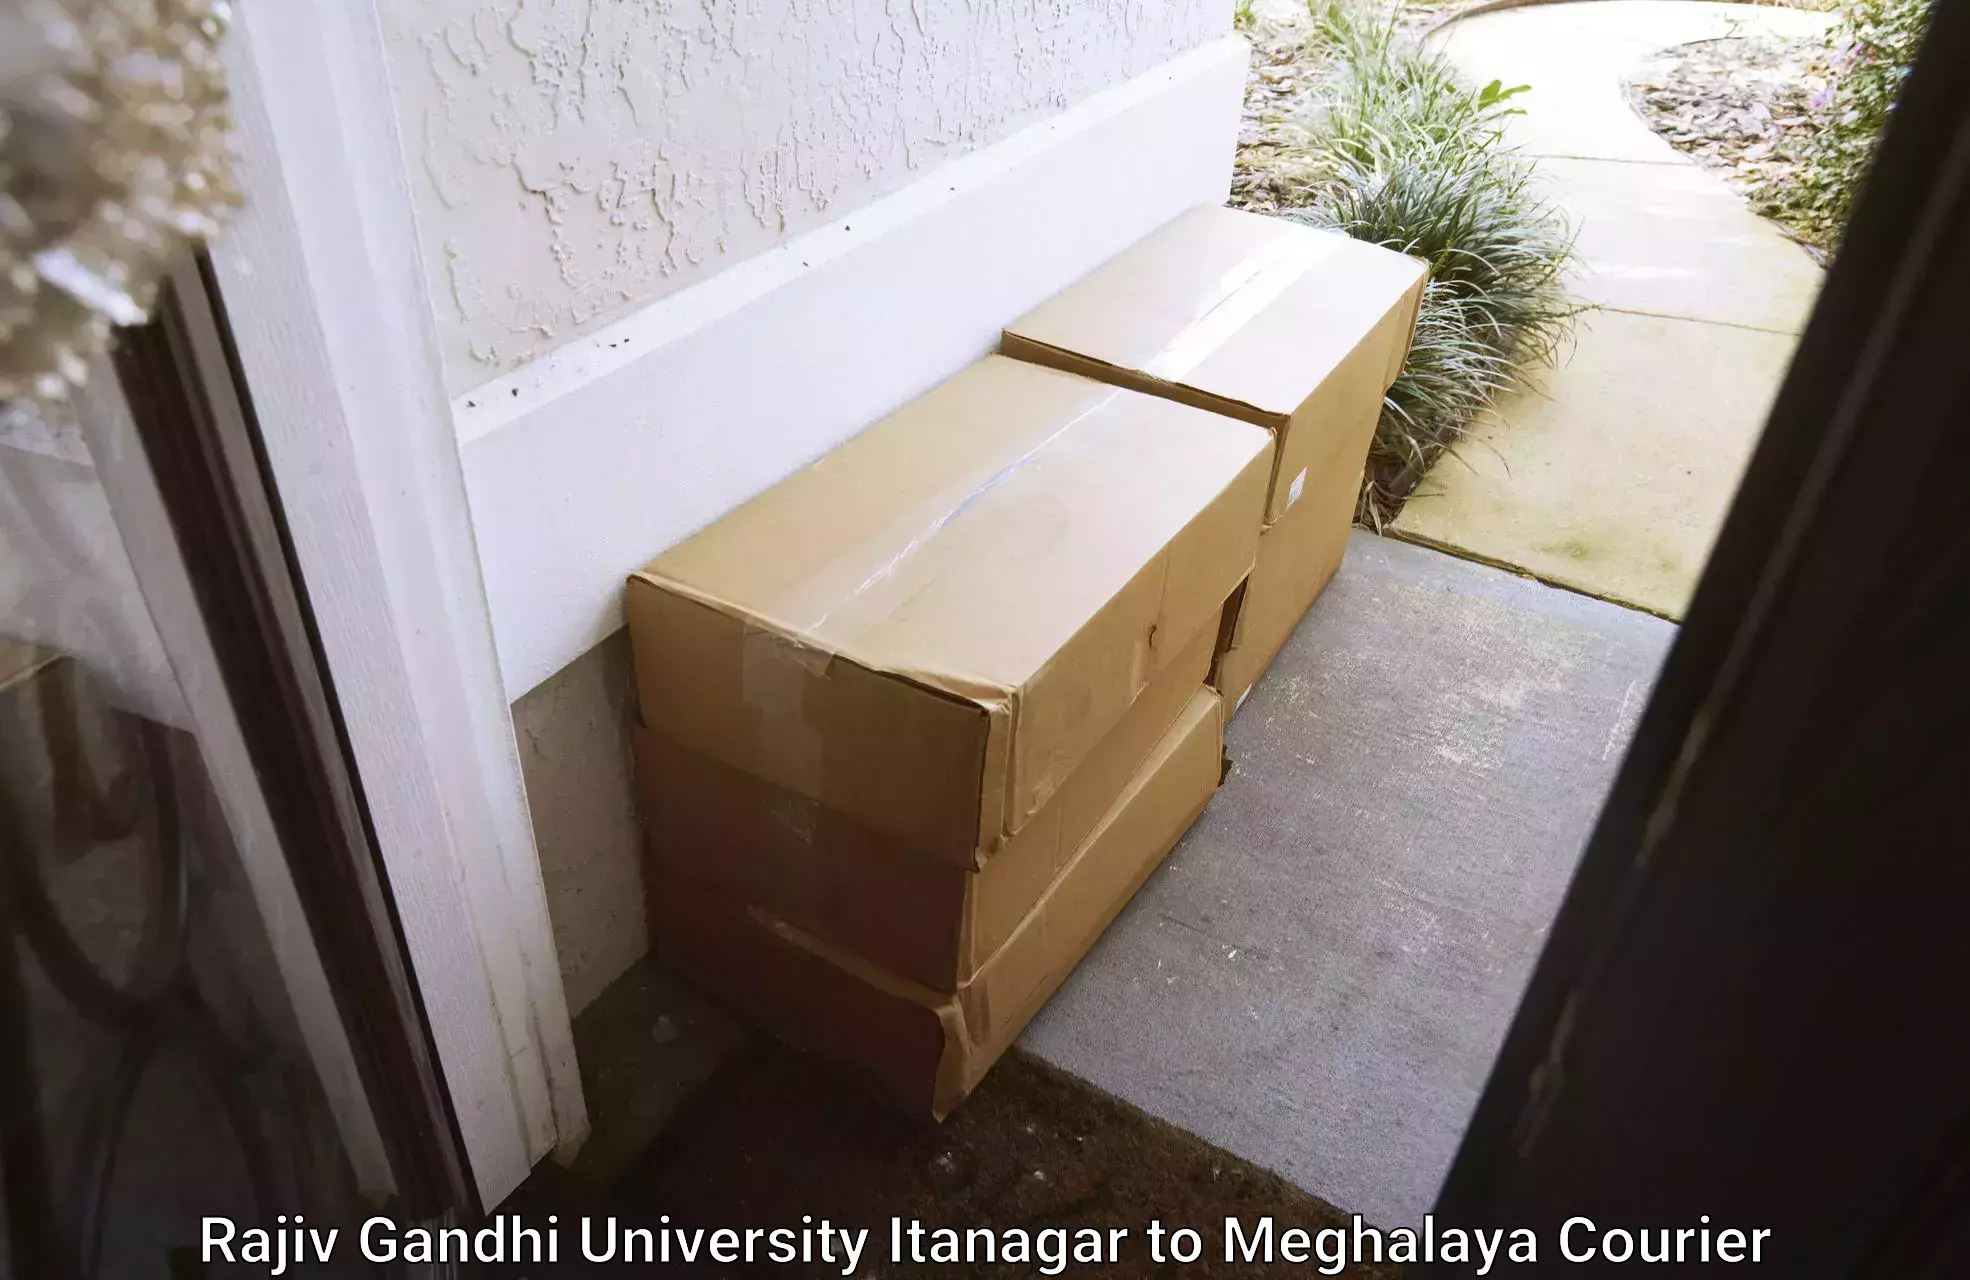 Large package courier Rajiv Gandhi University Itanagar to Nongpoh